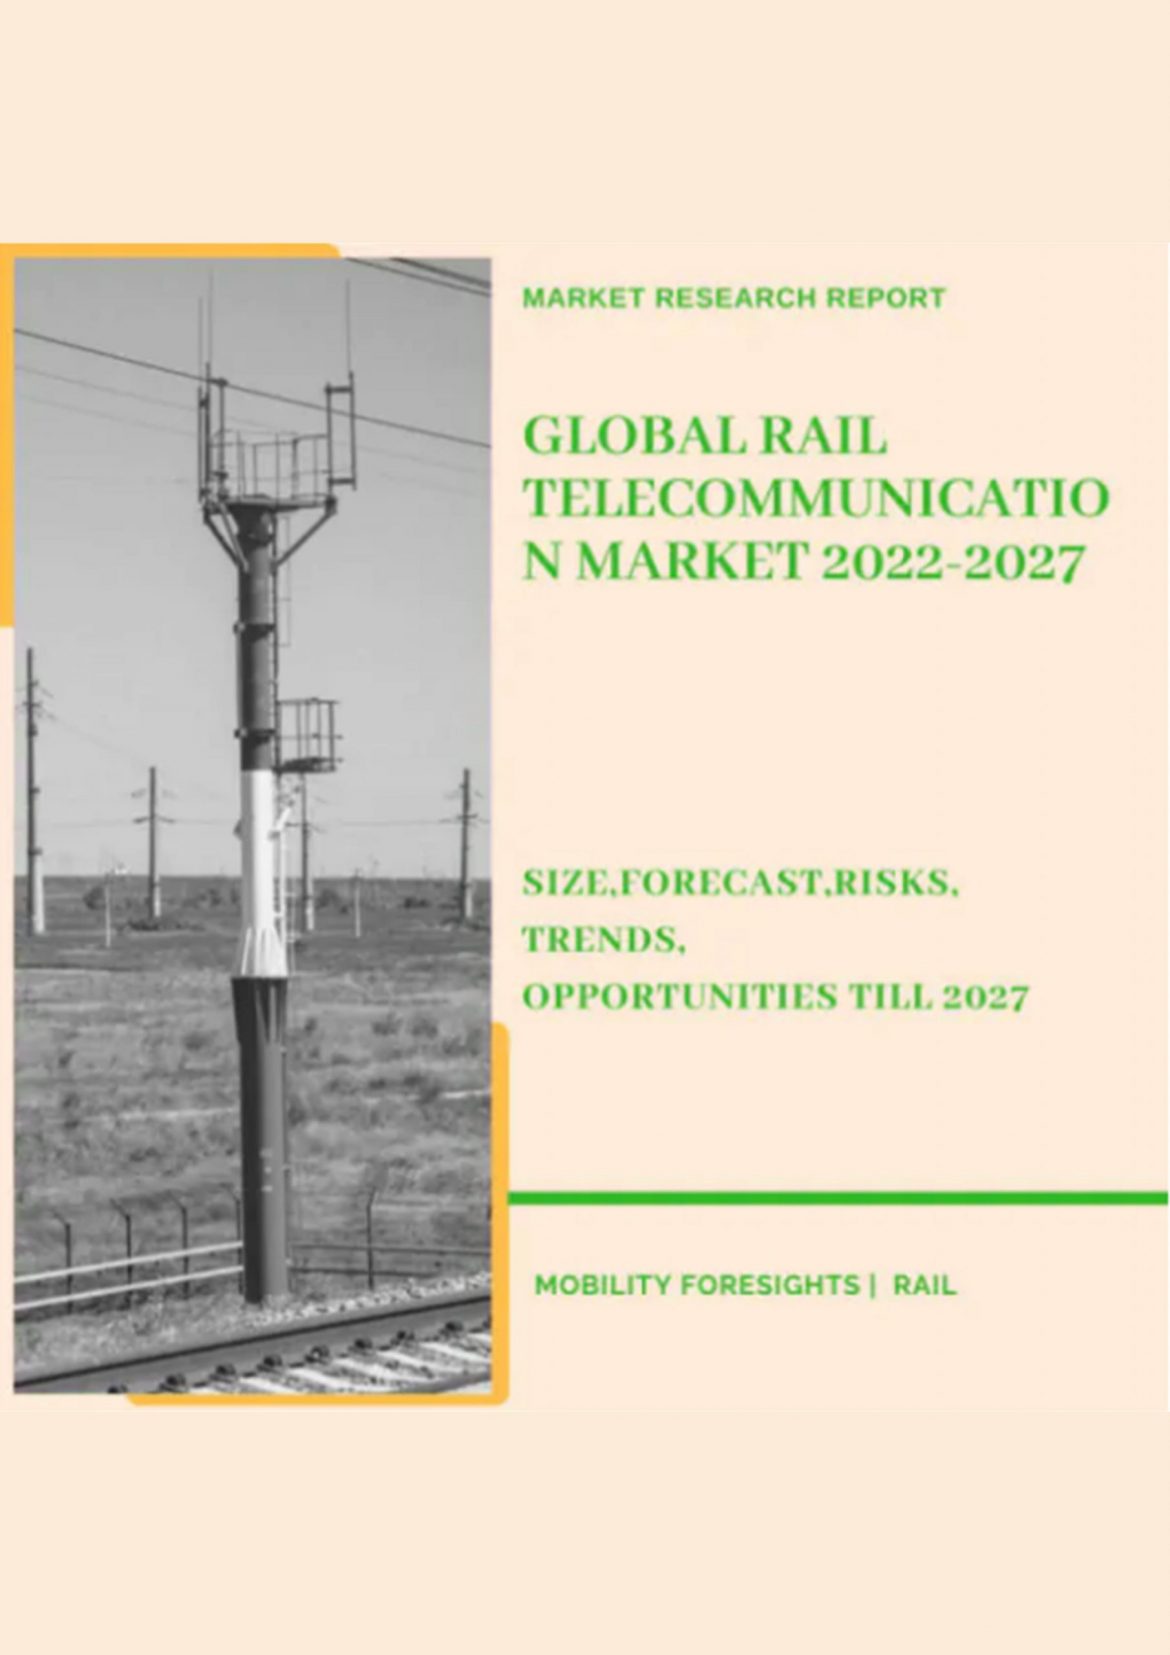 Global Rail Telecommunication Market 2022-2027